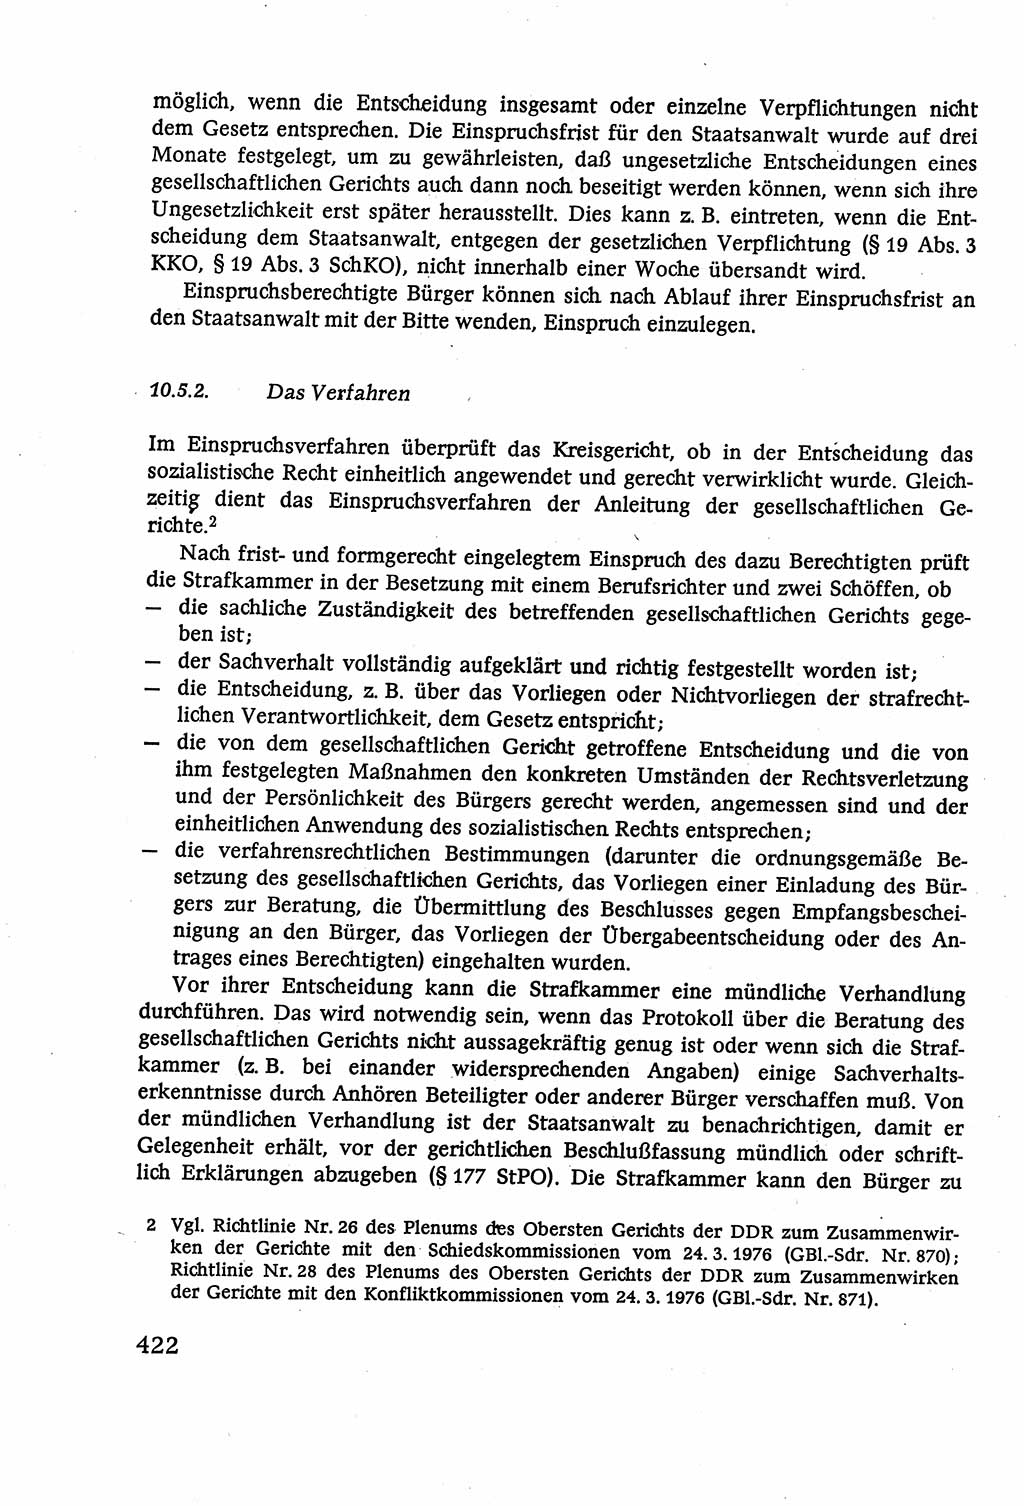 Strafverfahrensrecht [Deutsche Demokratische Republik (DDR)], Lehrbuch 1977, Seite 422 (Strafverf.-R. DDR Lb. 1977, S. 422)